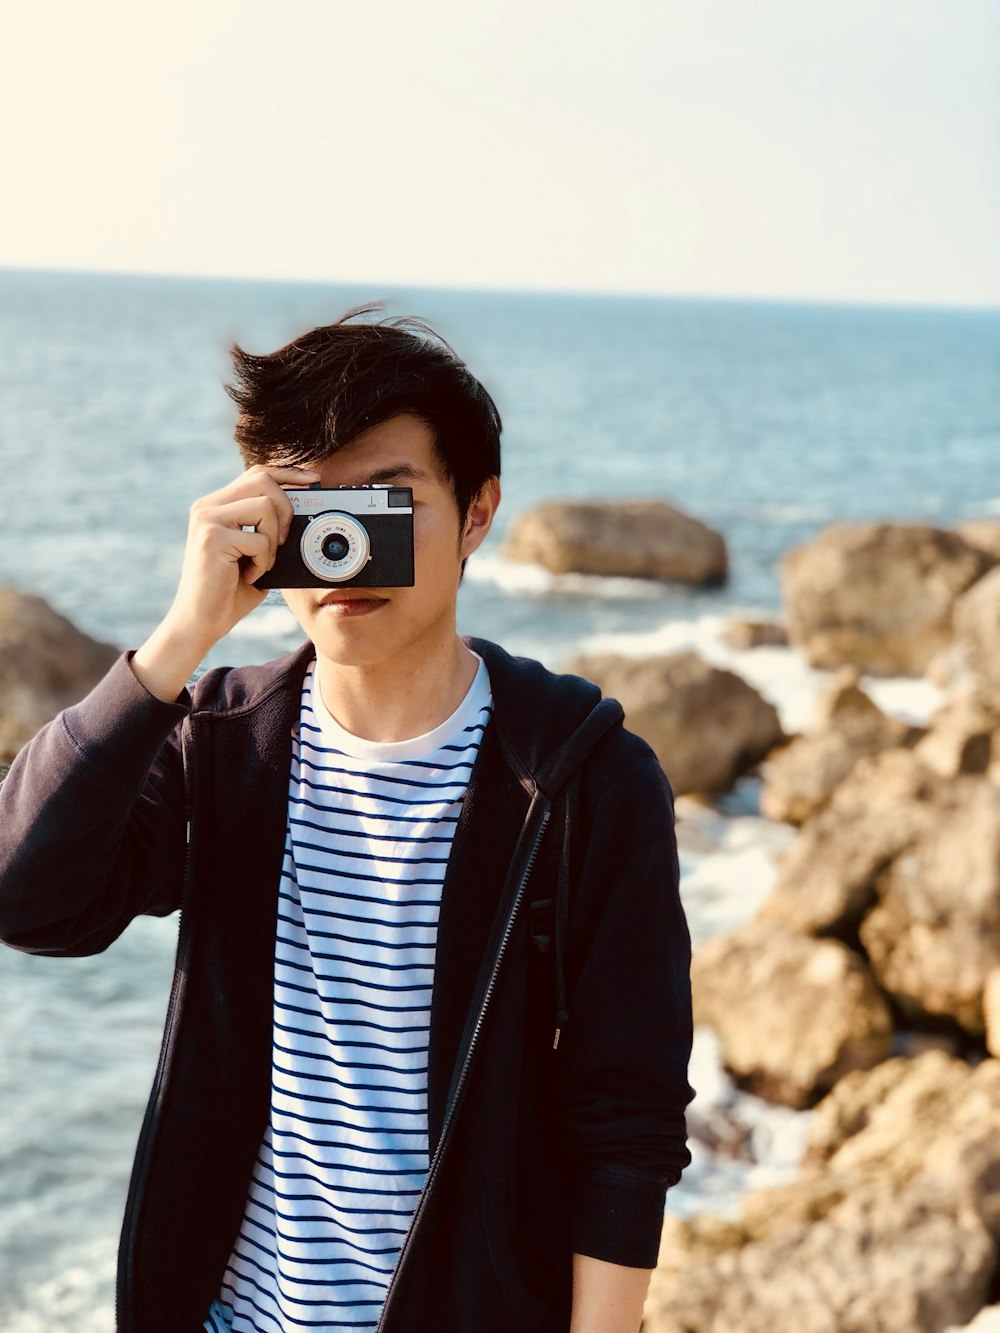 Persona tomando foto con una cámara gris de apuntar y disparar cerca del mar